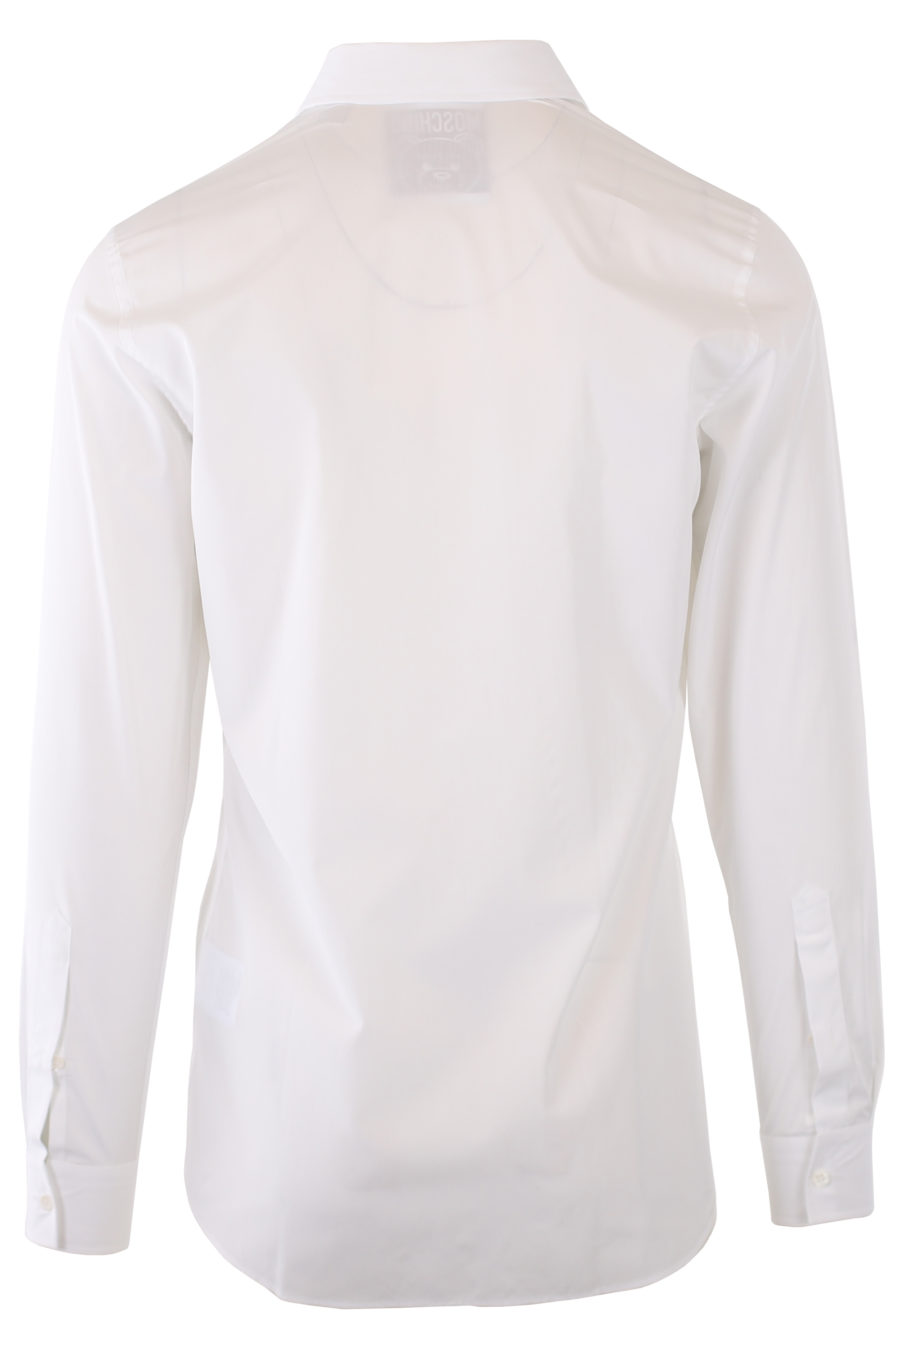 Camisa branca com o logótipo do urso - IMG 9305